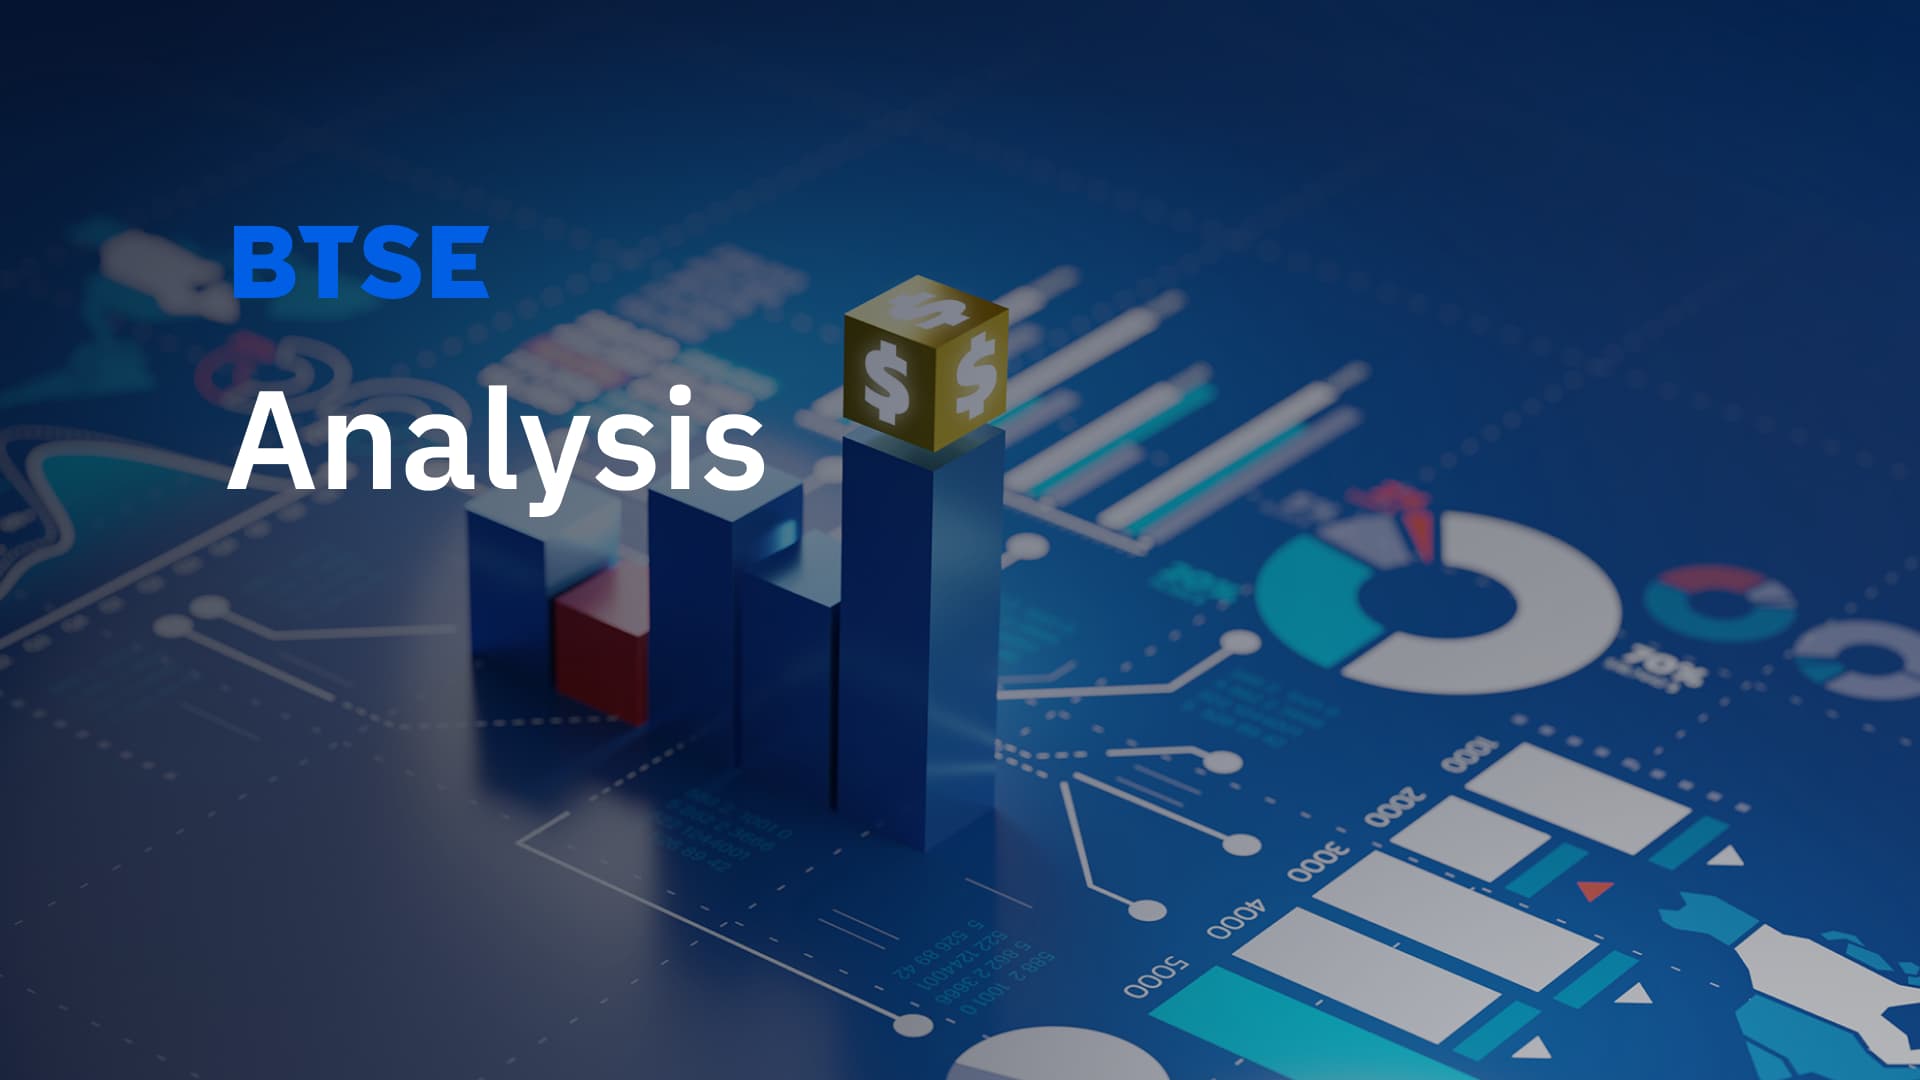 Crypto Market Analysis